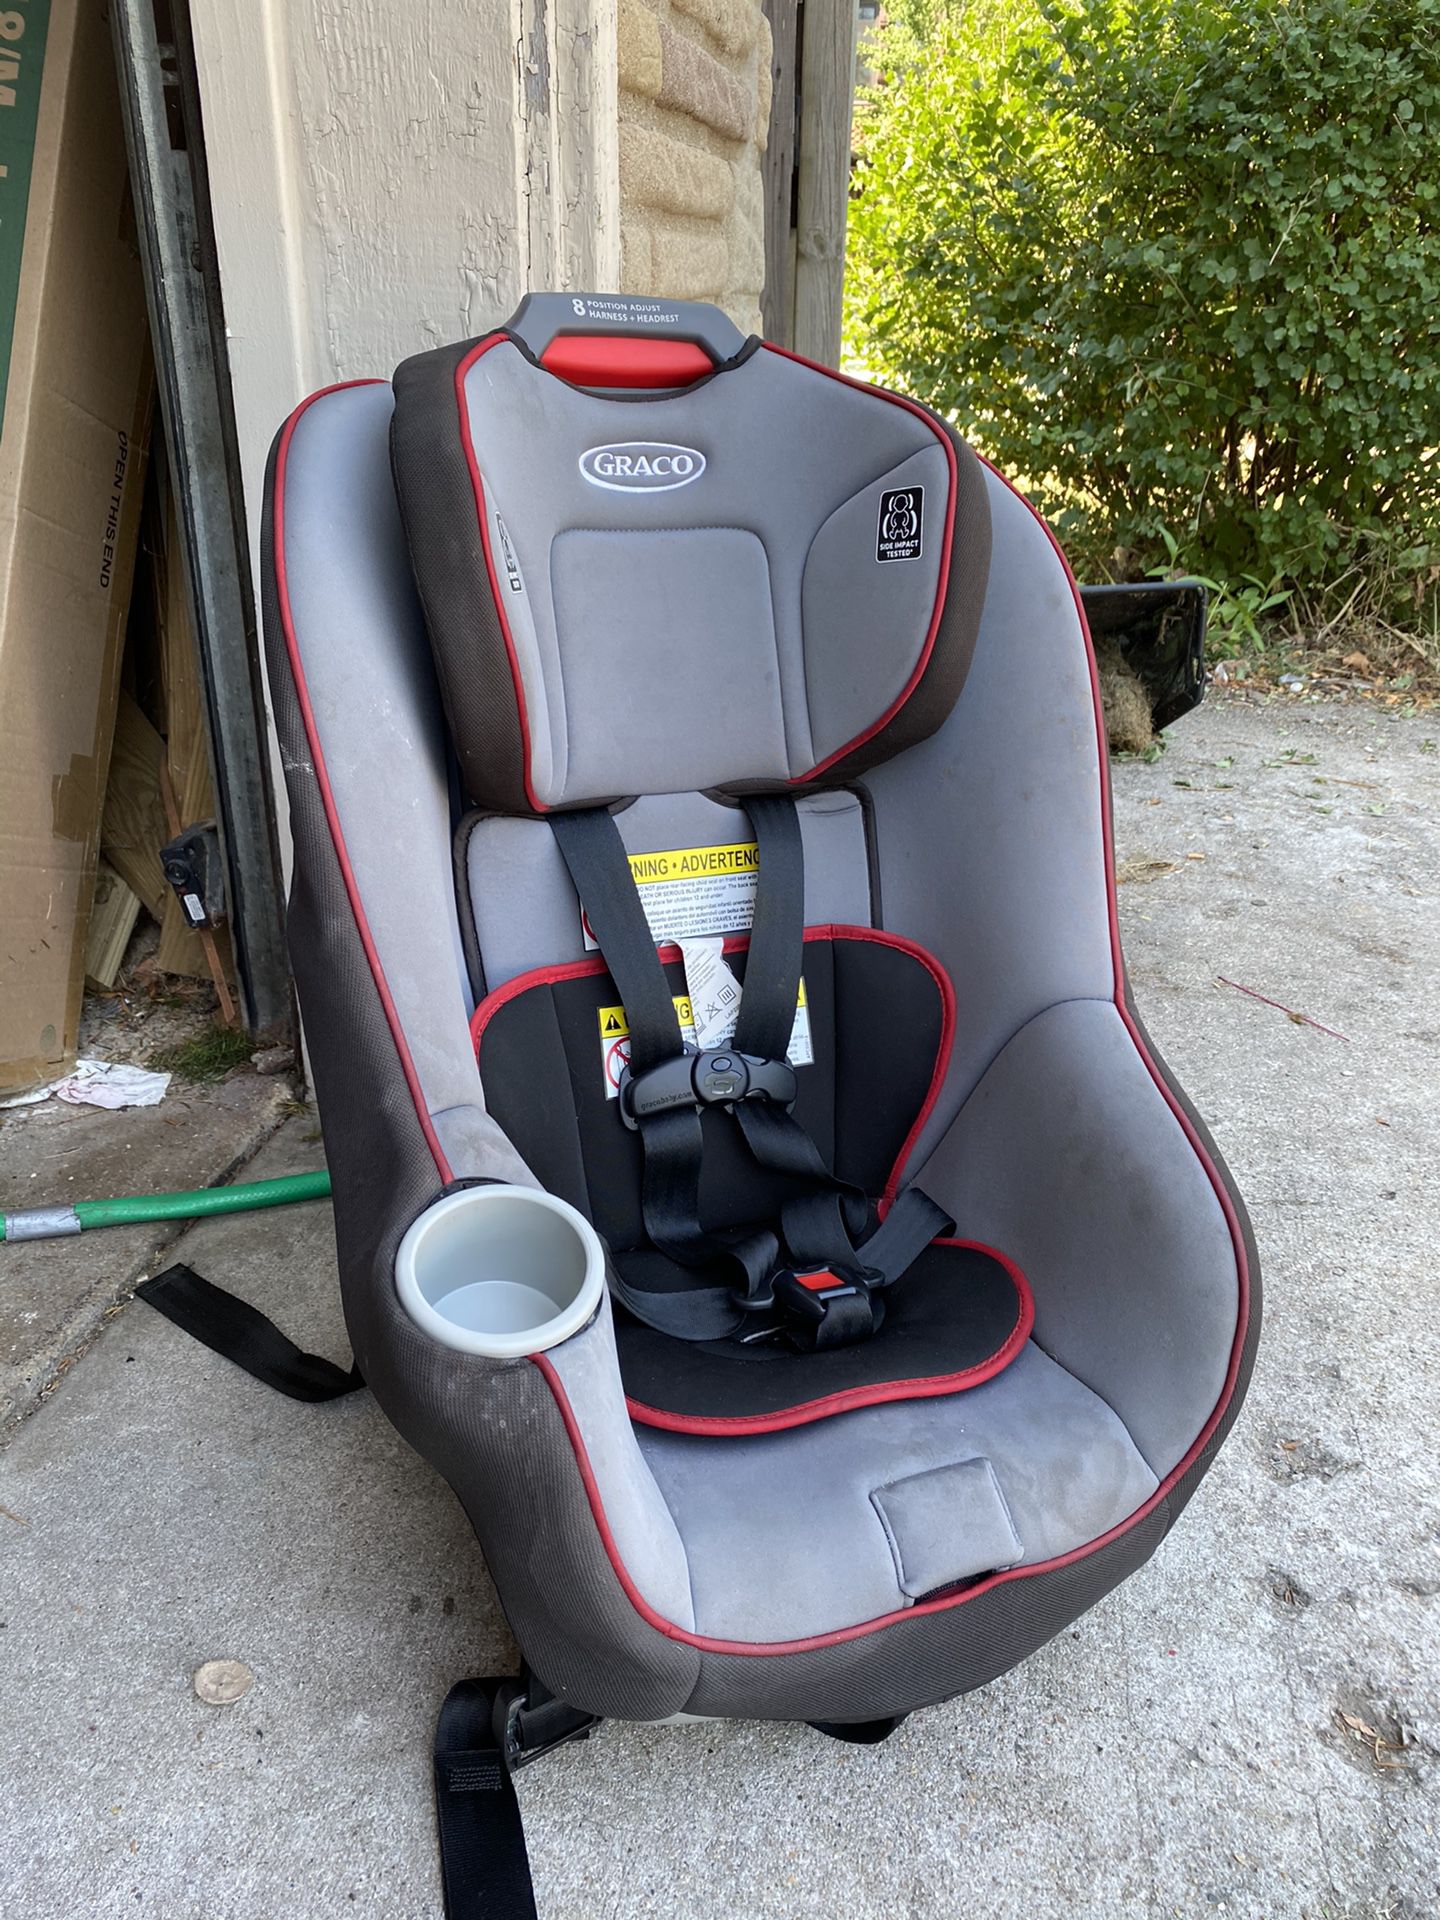 Graco toddler car seat